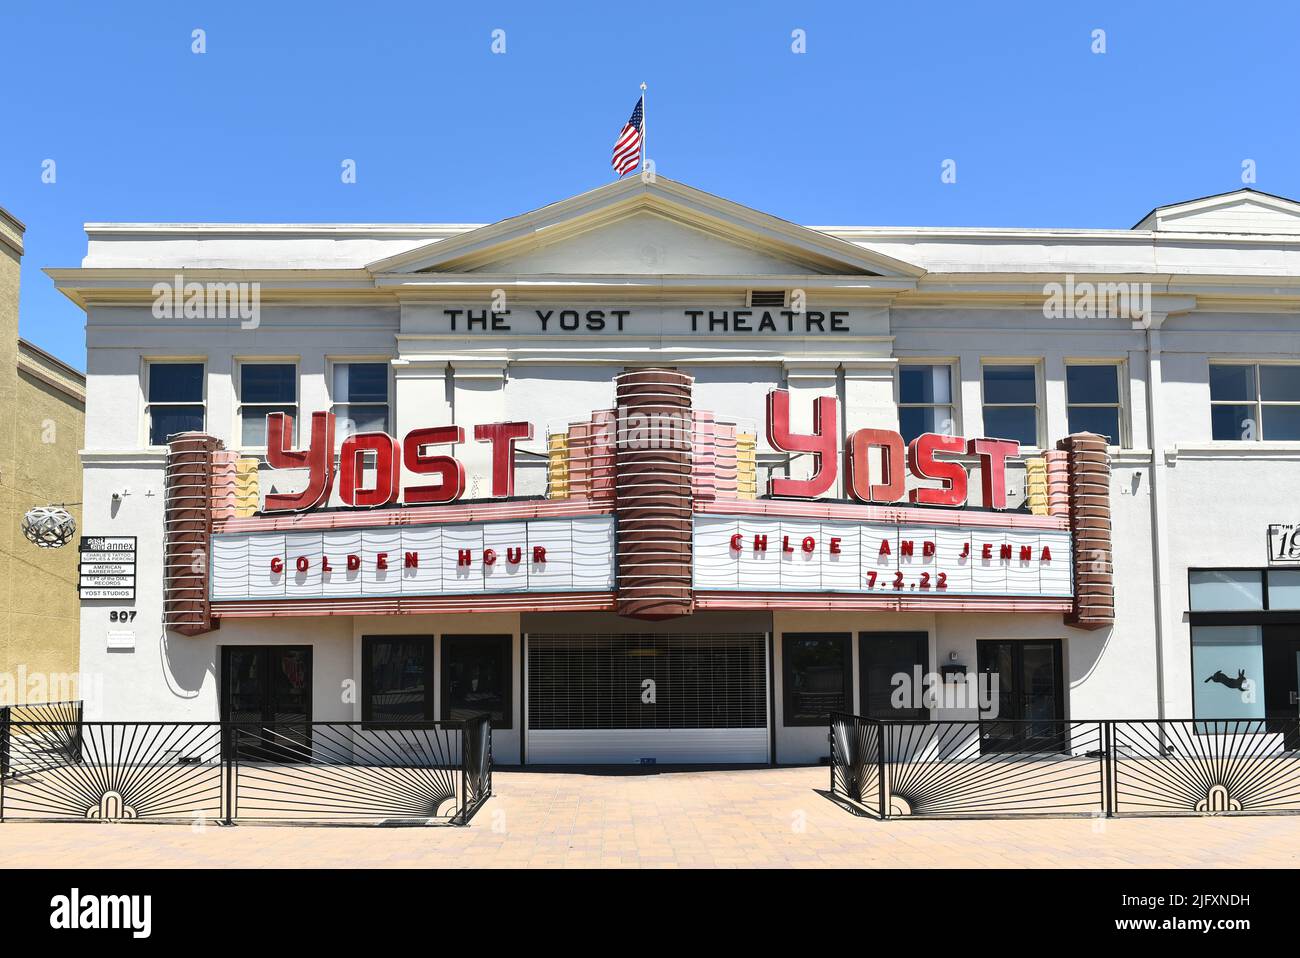 SANTA ANA, CALIFORNIA - 4 JUL 2022: The historic Yost Theatre, the oldest theater in Orange County, in Plaza de Santa Ana. Stock Photo